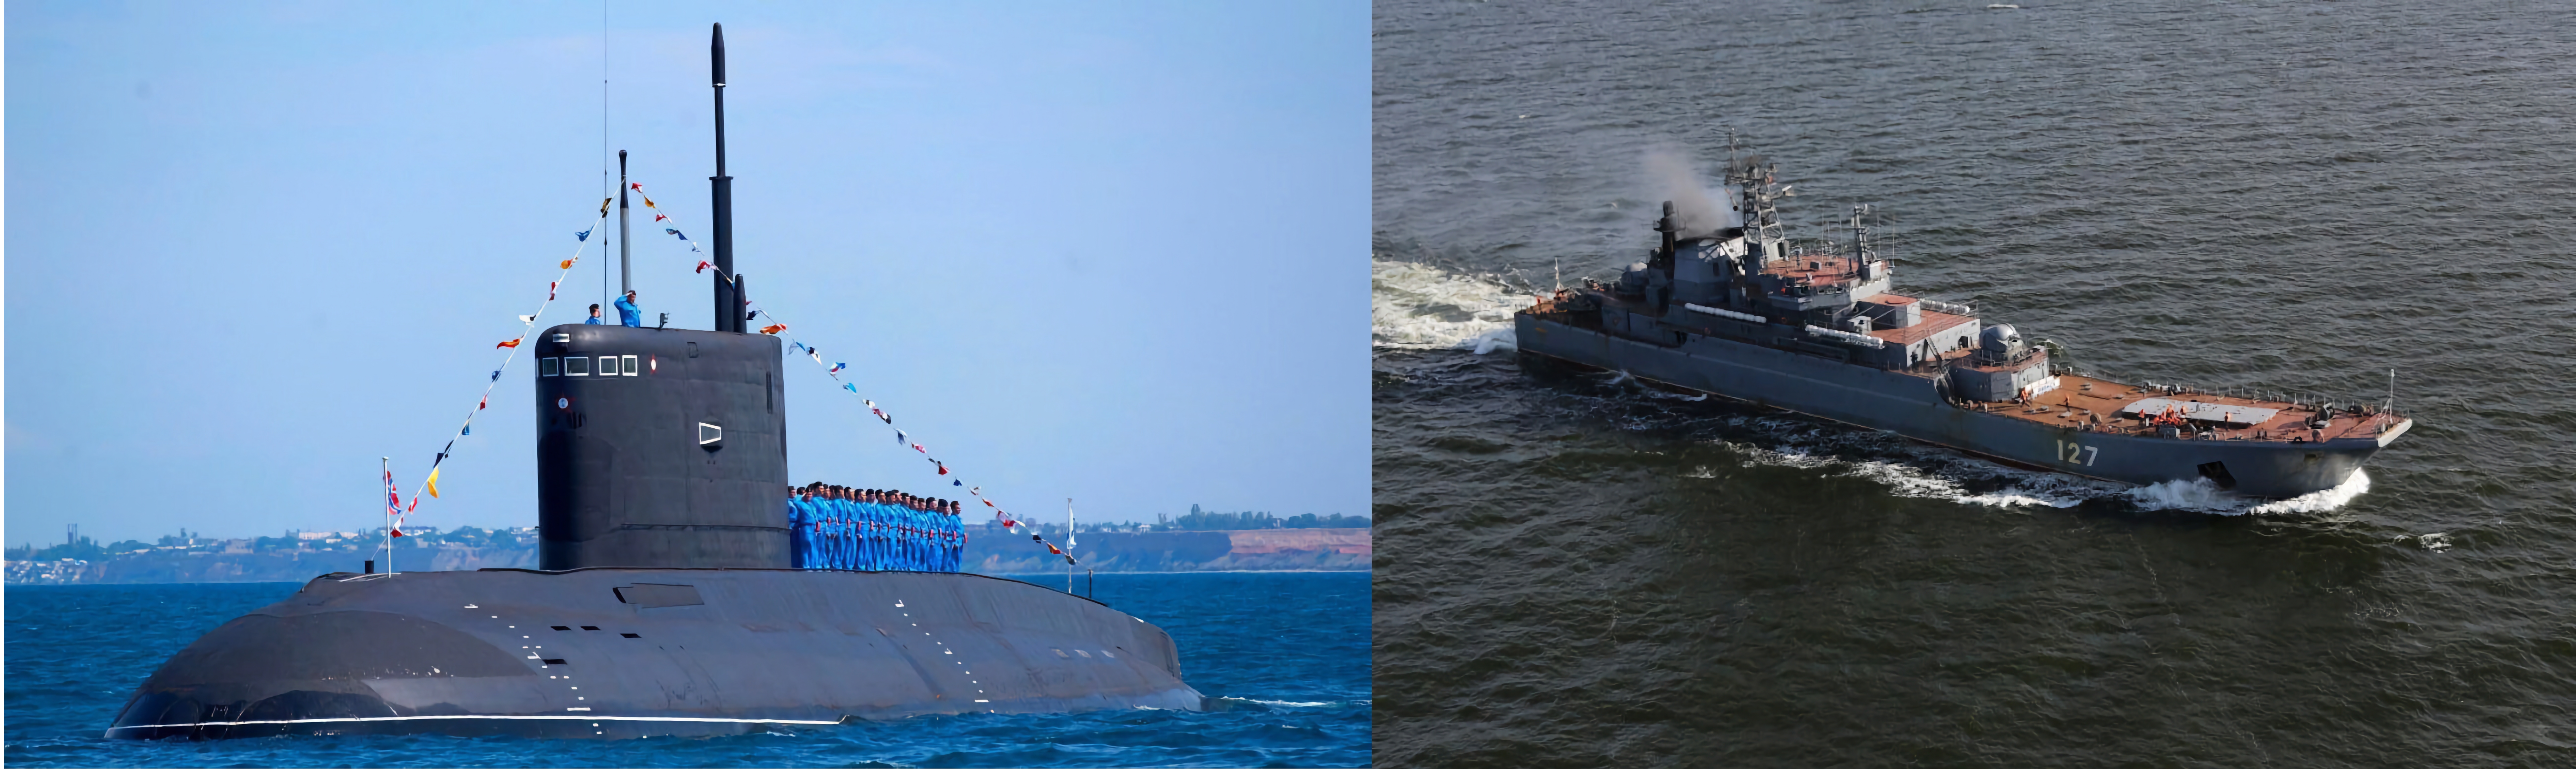 Ukjente missiler angrep et skipsreparasjonsanlegg på Krim og skadet et russisk landgangsfartøy og en ubåt i angrepet.